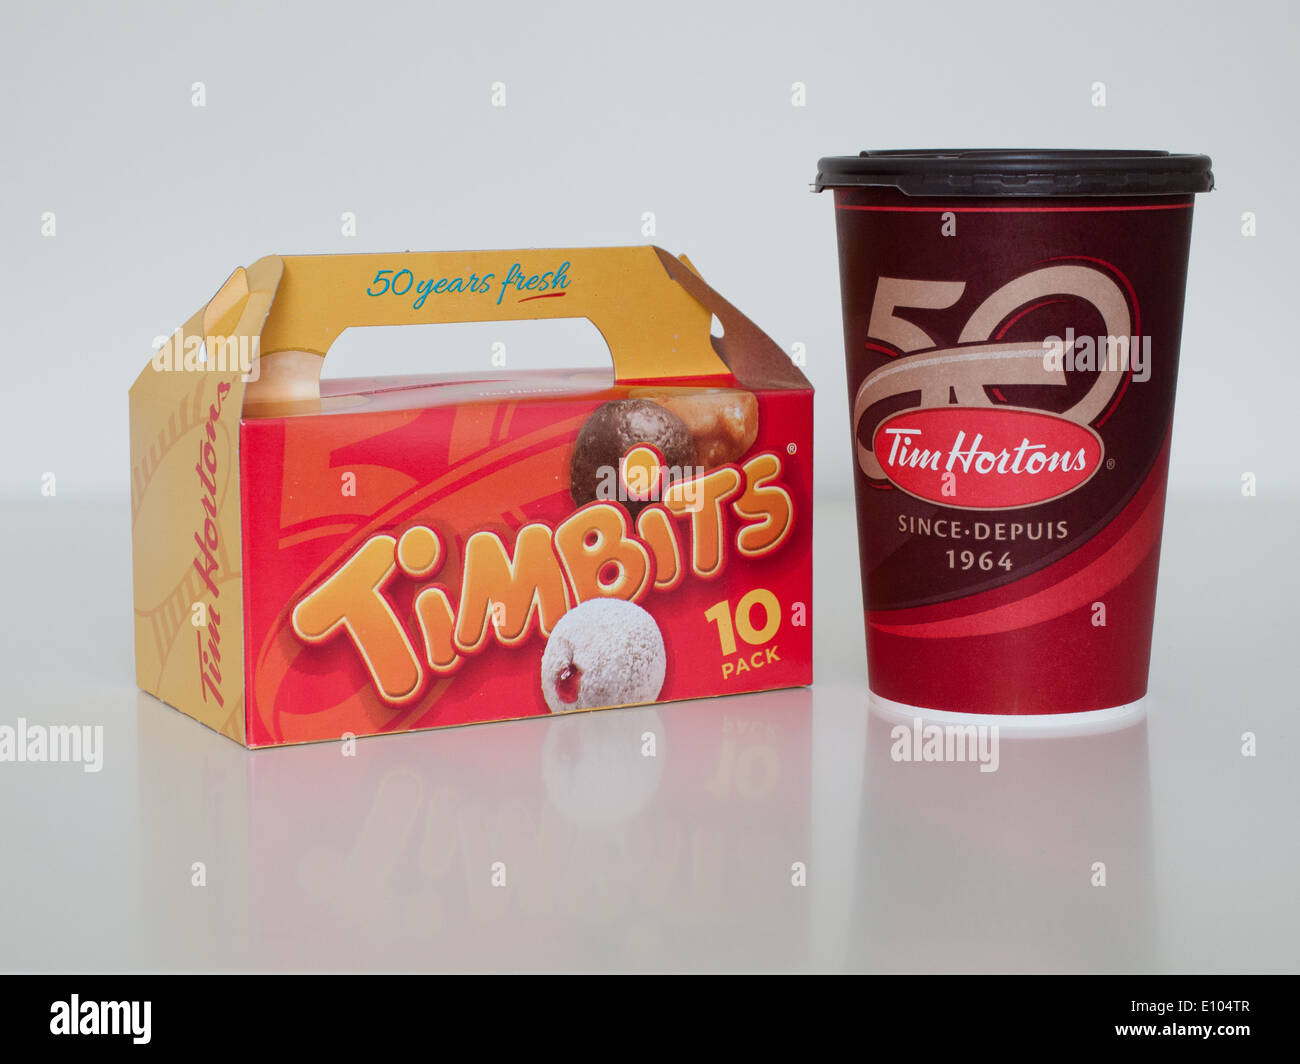 Una taza de café de Tim Hortons y Timbits (agujeros de donut, donut orificios). Canadá. Foto de stock